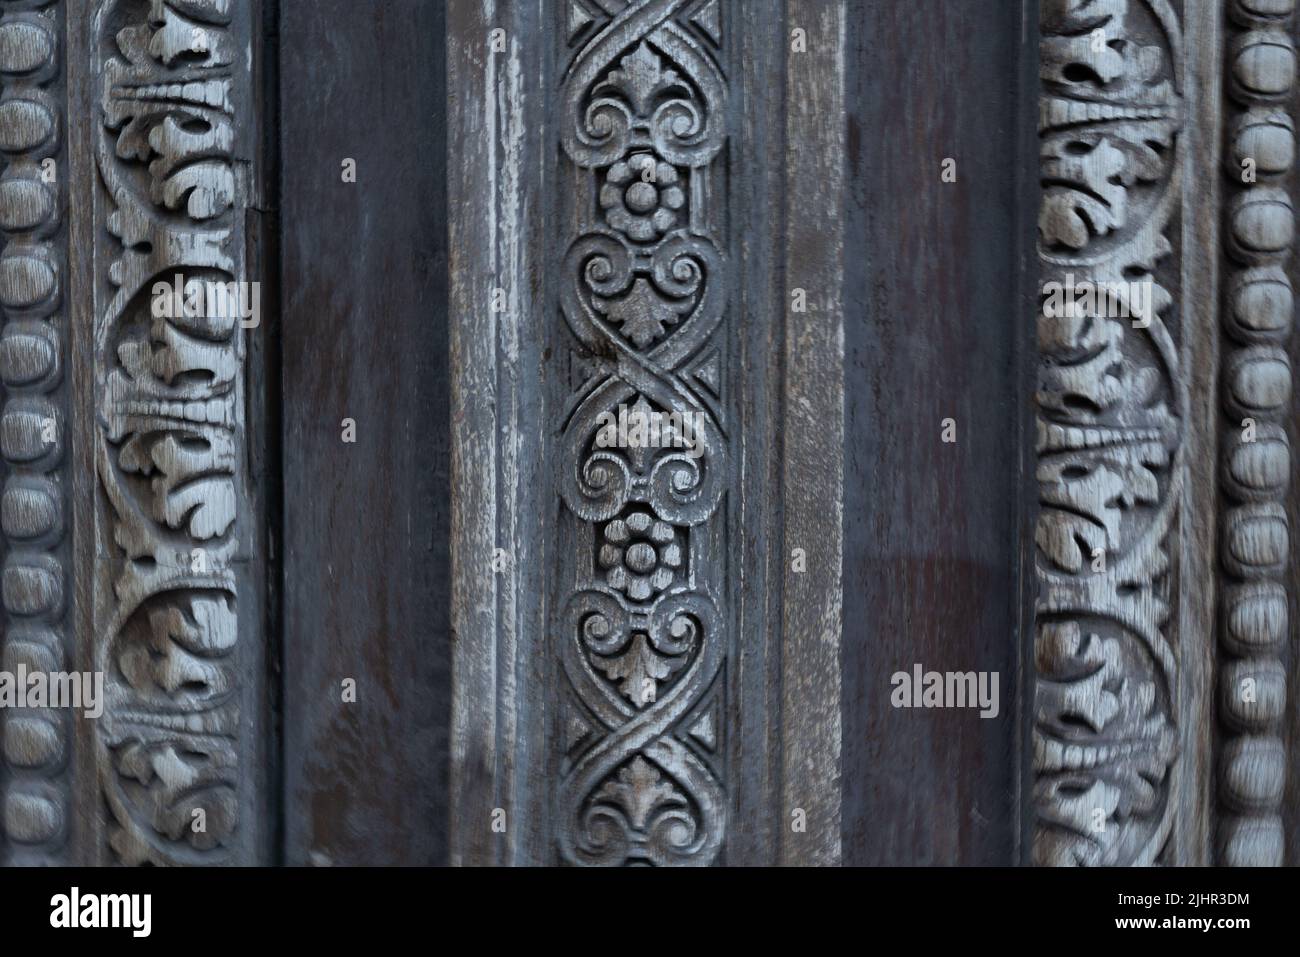 France, Ile de France region, Paris,1st arrondissement, rue de Rivoli, detail of a carved door, Stock Photo